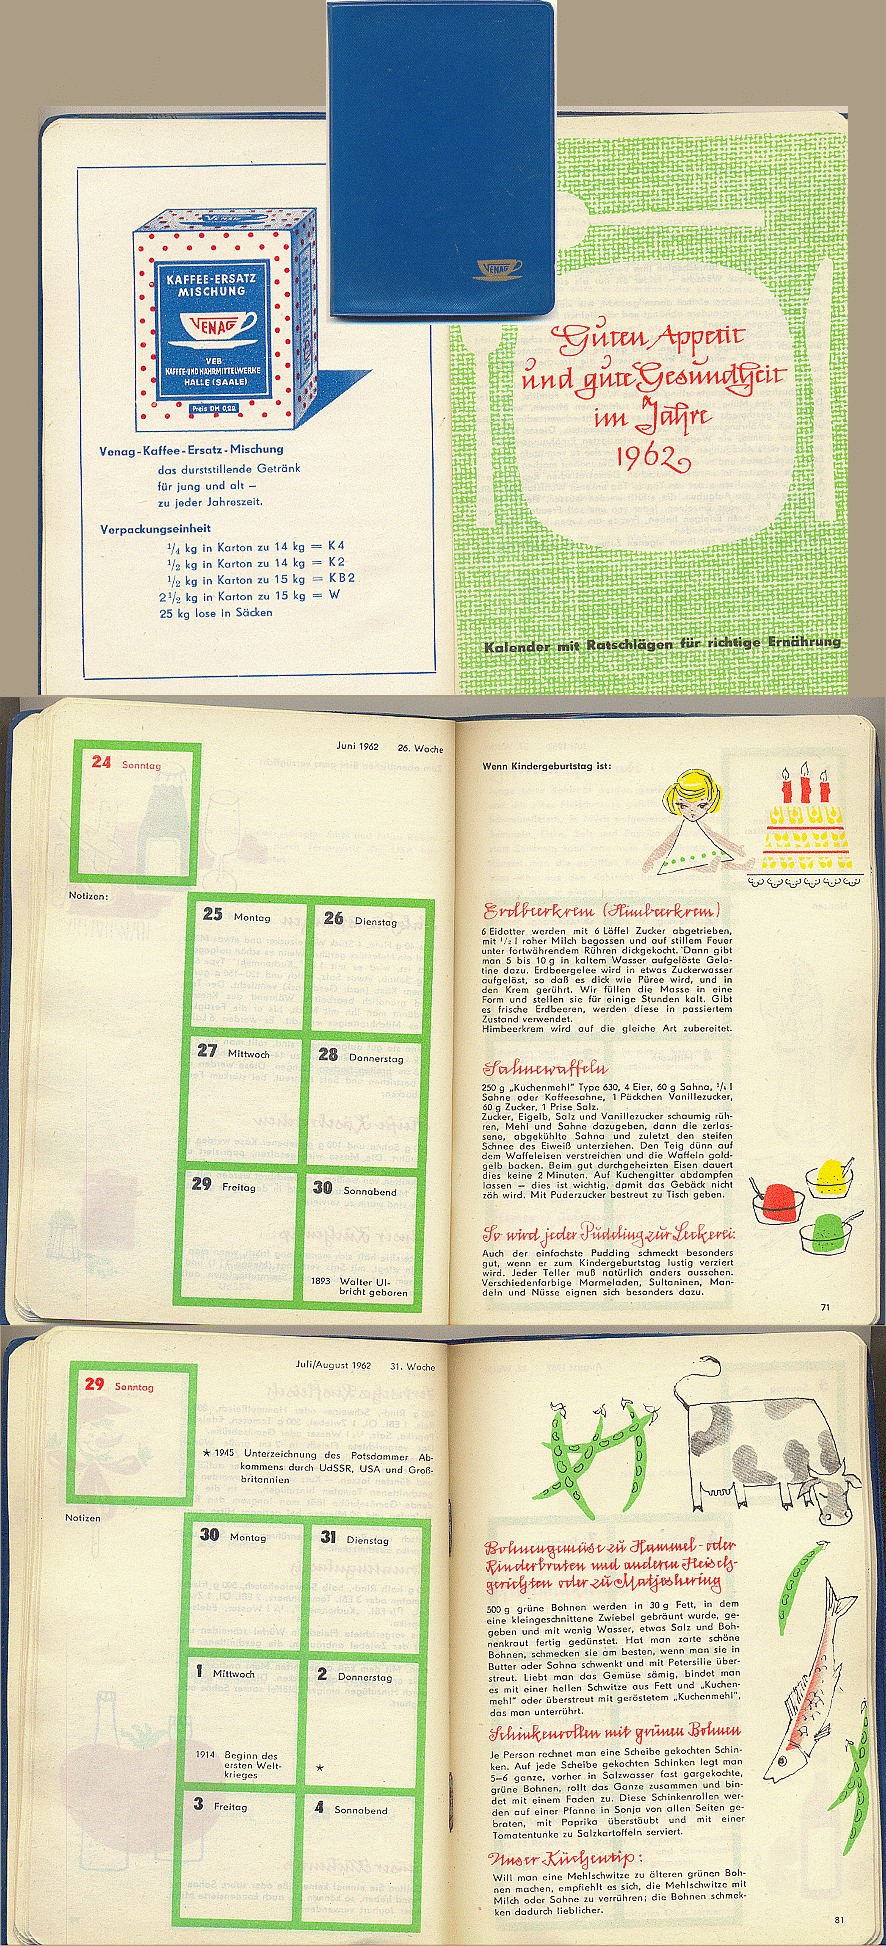 VENAG Kalender 1962 Ernhrung, Rezepte liebevoll illustriert - 6,00 Eur